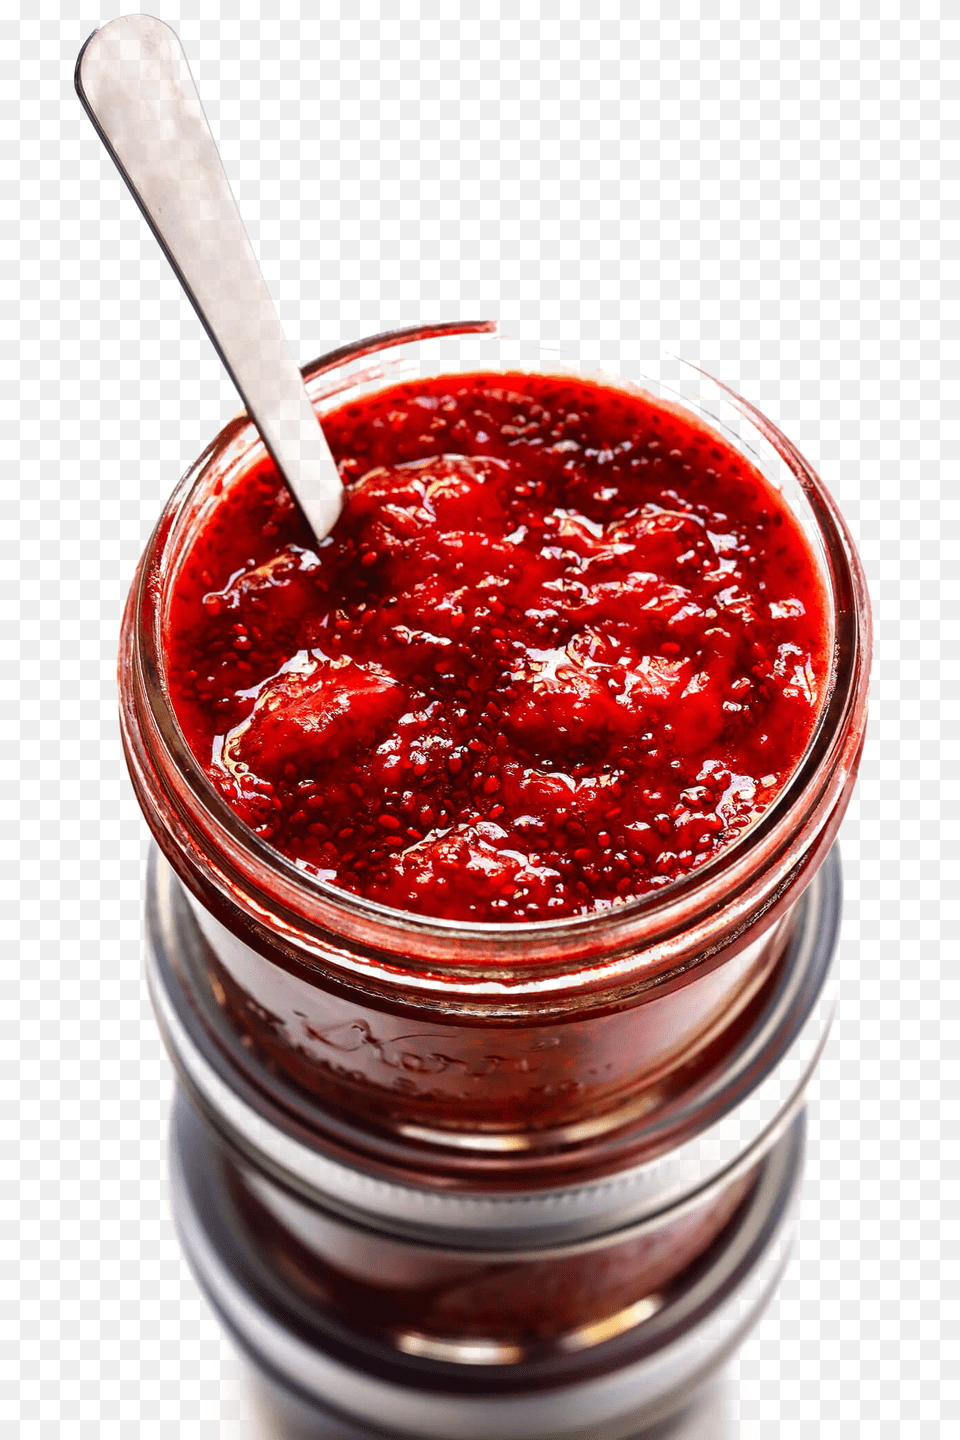 Jam, Food, Ketchup, Jar, Berry Free Transparent Png